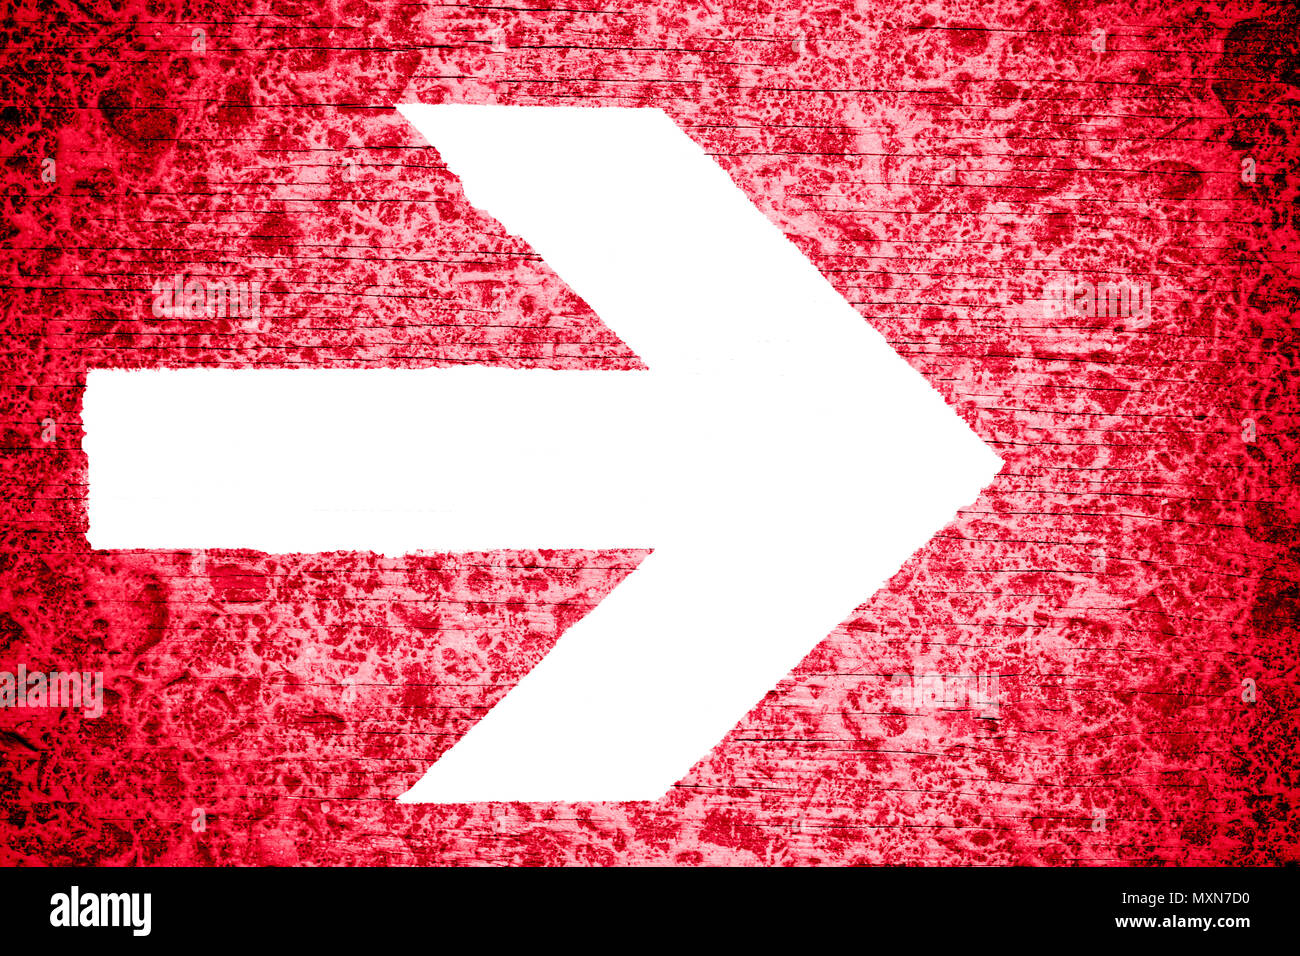 Directionnel blanc flèche dirigée vers la droite peint sur un rouge lumineux en bois irrégulière grungy texture background. Banque D'Images